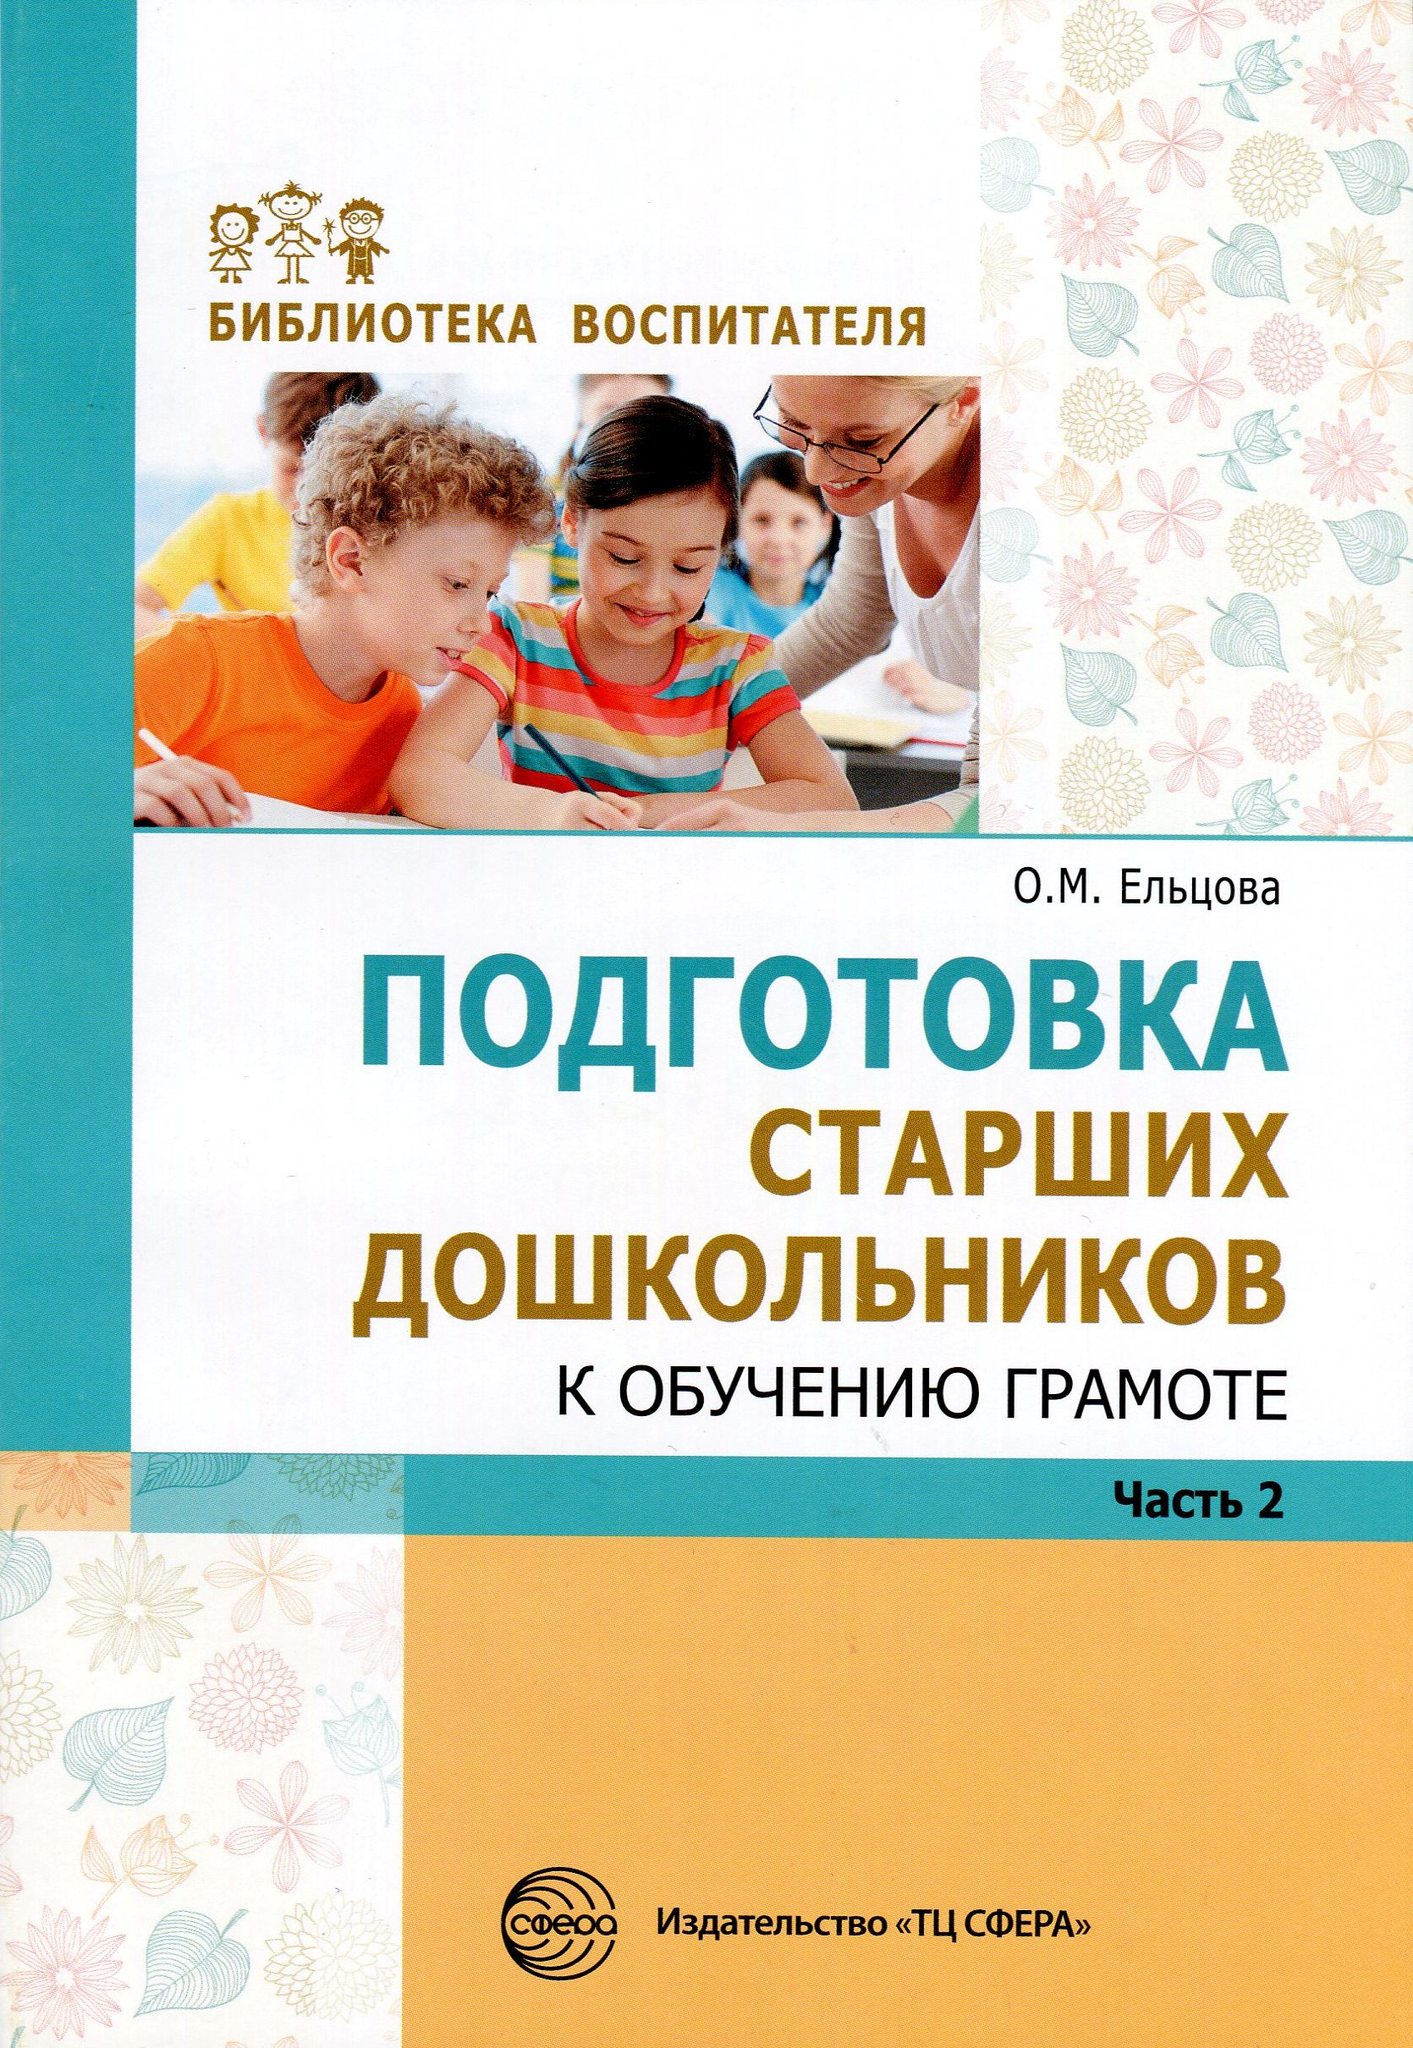 Л.Е. Журова. Подготовка к обучению грамоте детей 4-5 лет (конспекты занятий)